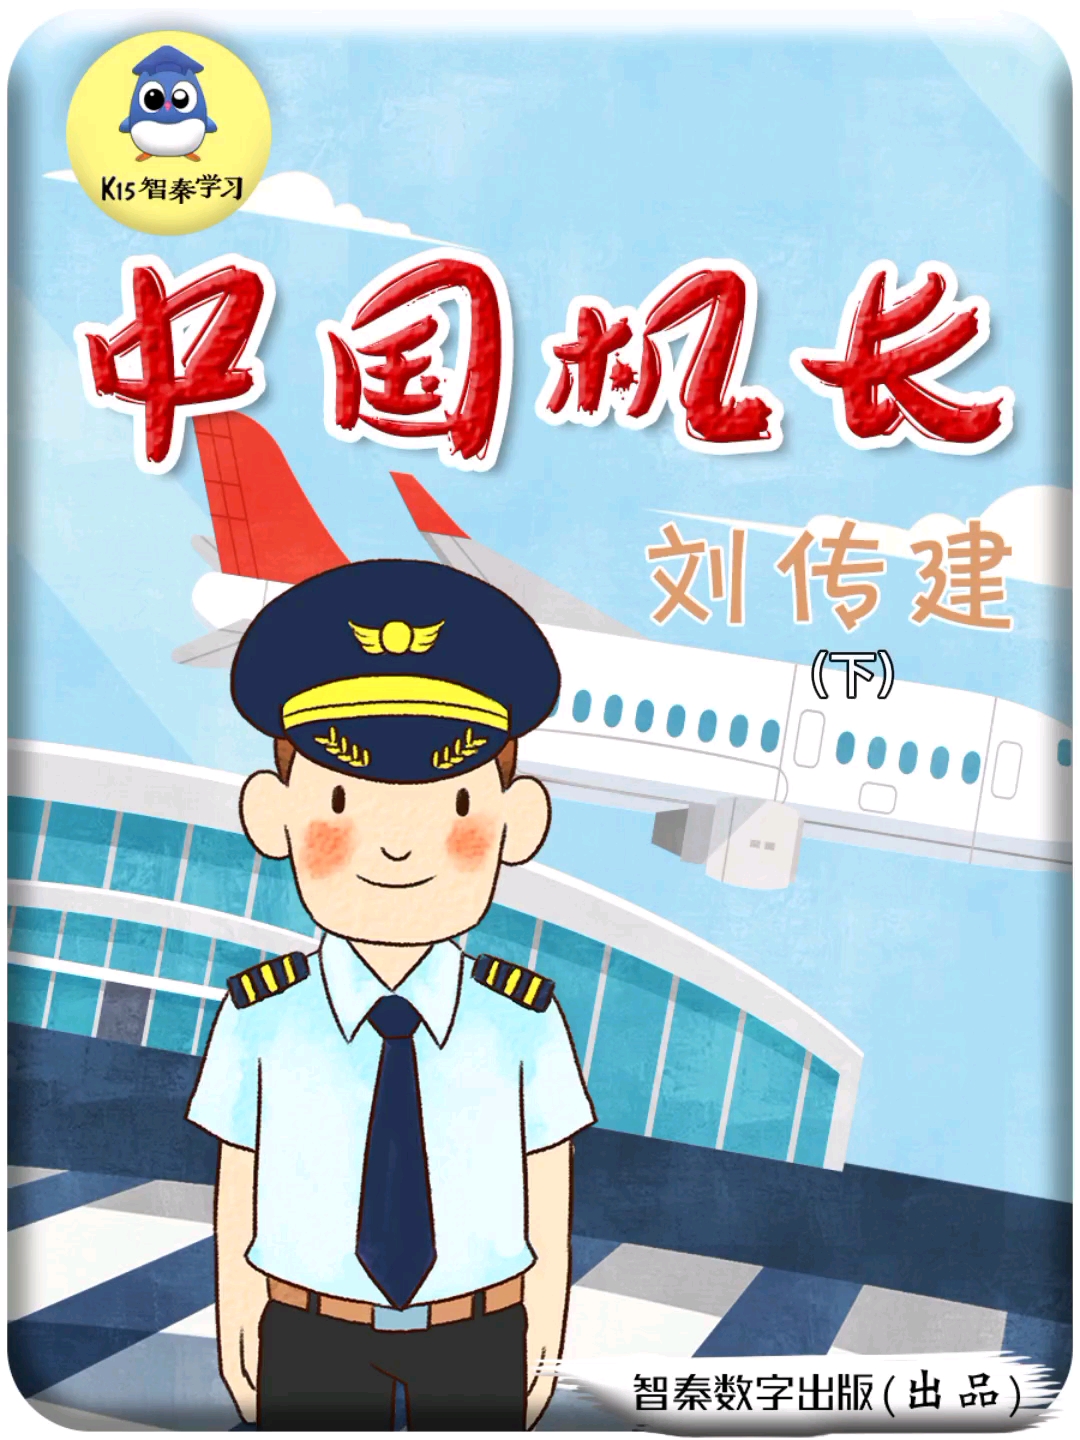 中国机长PPT图片